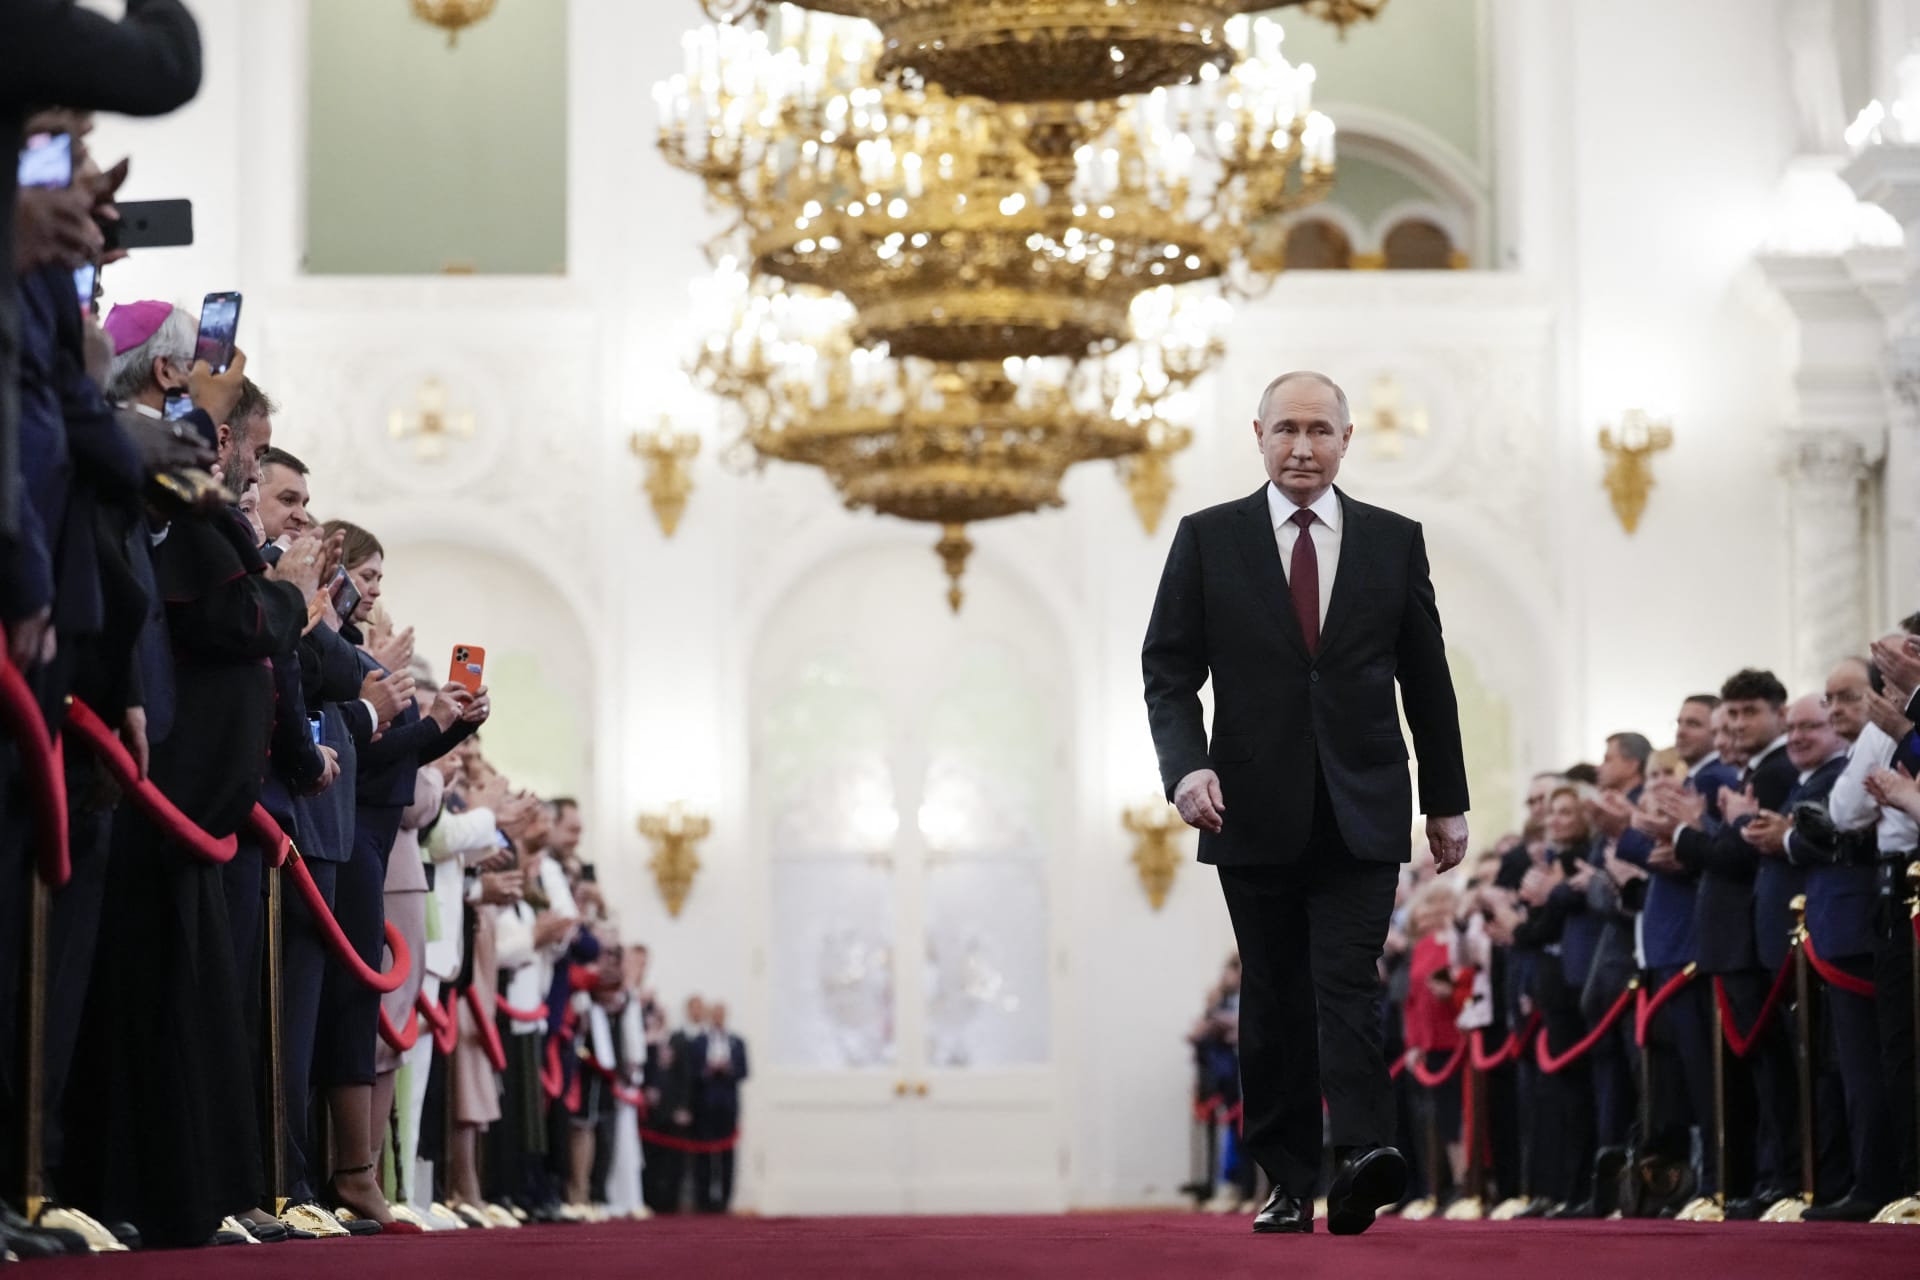 بوتين يحلف اليمين لولاية خامسة في حكم روسيا: لا نرفض الحوار مع دول الغرب والخيار لهم